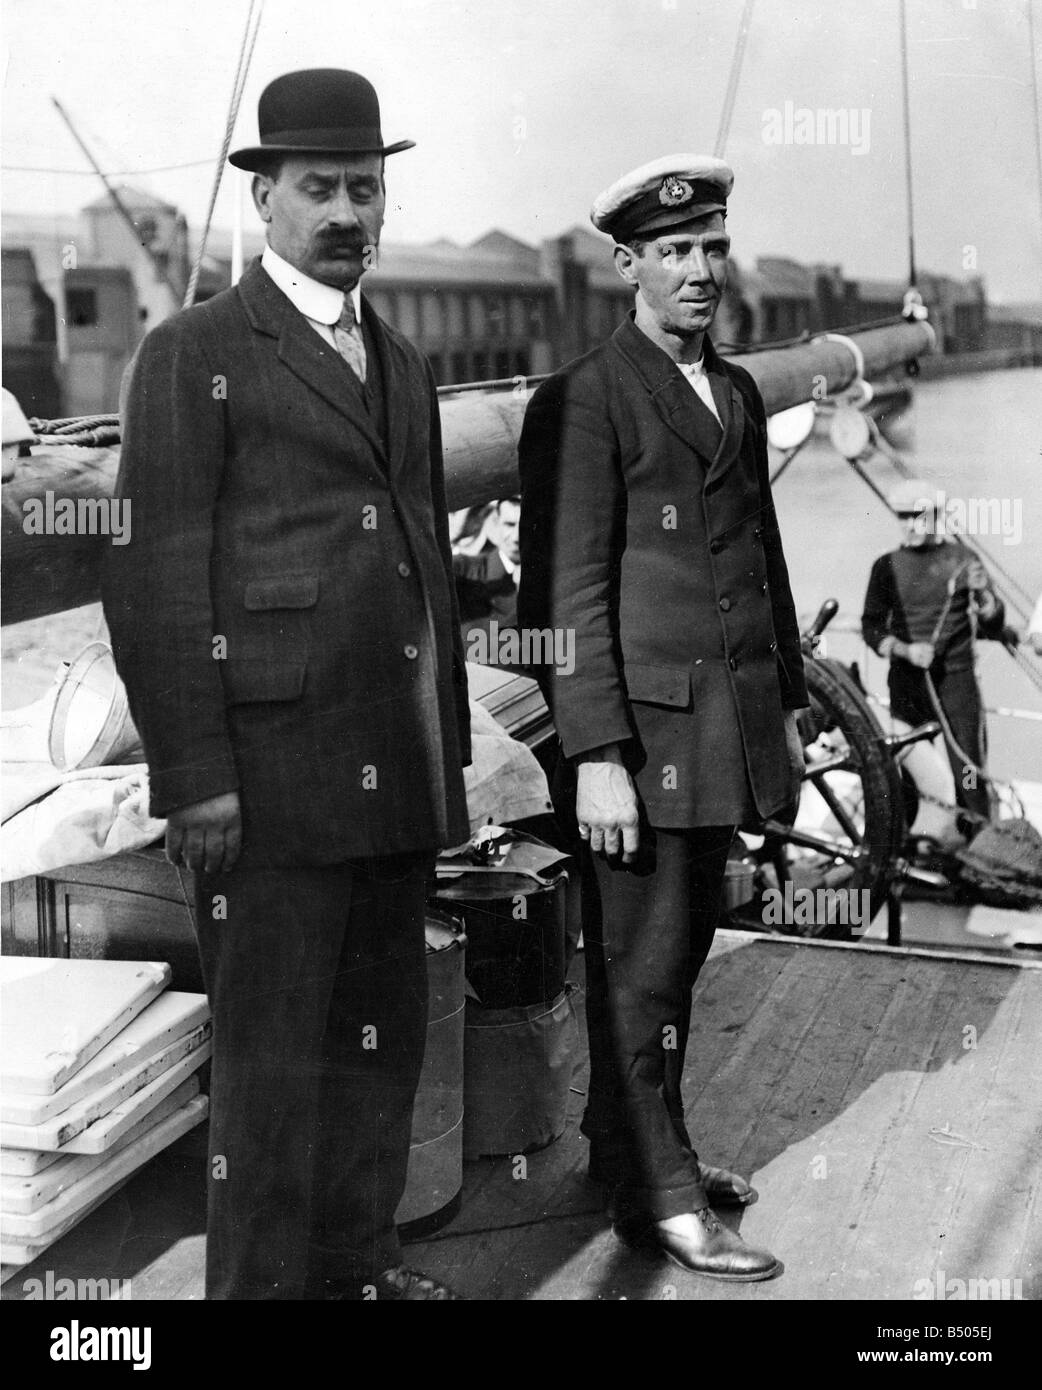 Dritter Offizier Alfred Cheetham (rechts) auf die Ausdauer, die hier auf dem Deck zu sehen, wie das Schiff UK Ufer im August 1914 fährt diente Cheetham unter Scott auf "Morgen" (Befreiung von der "Entdeckung") und "Terra Nova". Und unter Shackleton auf "Nimrod", wo er Dritter Offizier und Bootsmann war, und natürlich die "Ausdauer" als 3. Offizier verantwortlich für die Fo'c's'le (Vorschiff) Besatzung. Cheetham war eine bedeutende Figur in der Antarktis Exploration in seinem eigenen Recht, so dass vier Reisen in die Antarktis. Er starb in der Handelsmarine während des ersten Weltkriegs dient. Stockfoto